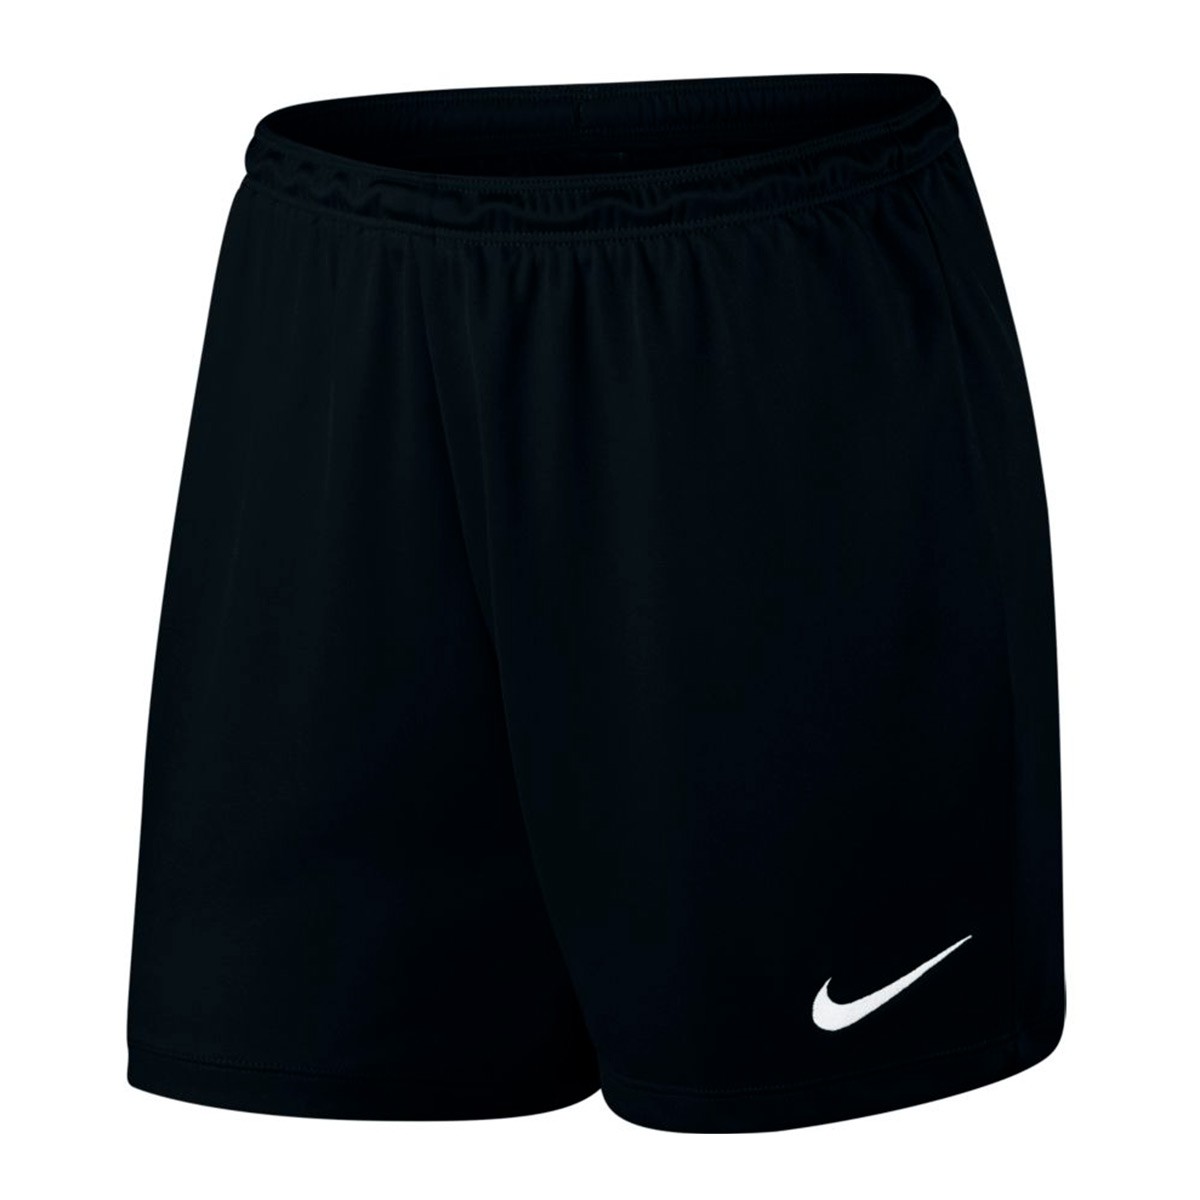 Pantalón corto Nike Park II Knit Mujer Black-White - Tienda de fútbol  Fútbol Emotion